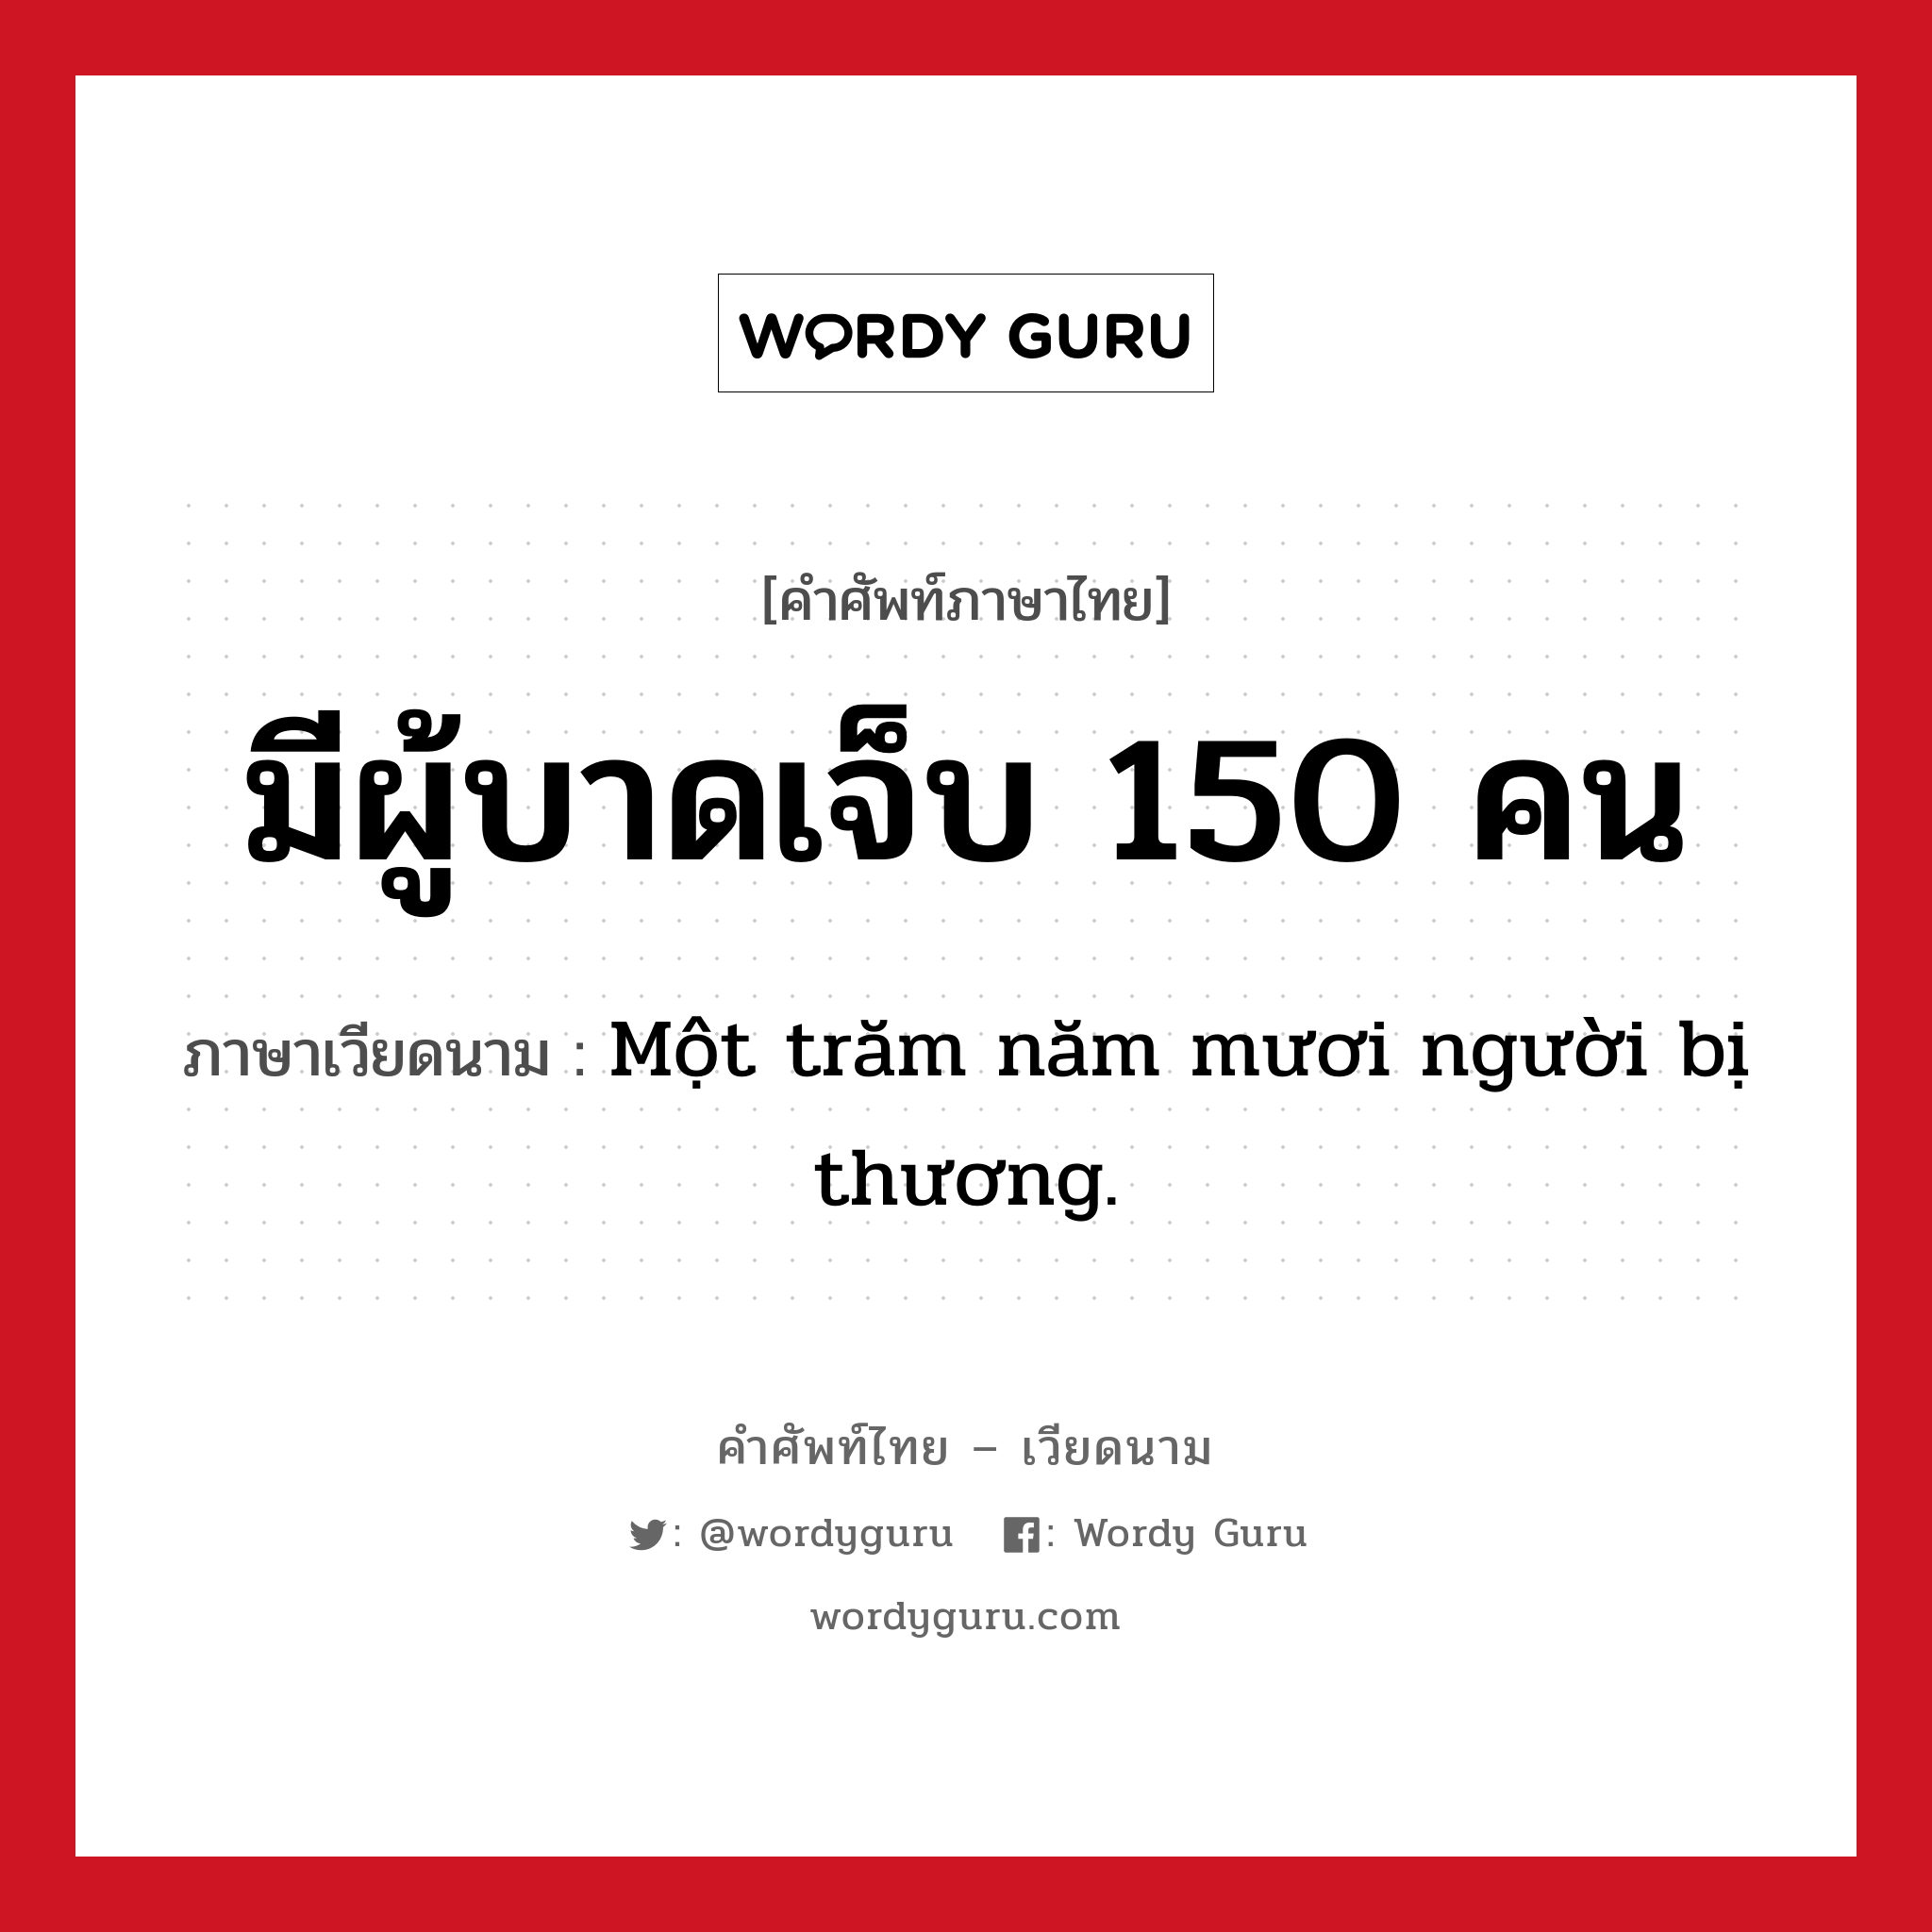 มีผู้บาดเจ็บ 150 คน ภาษาเวียดนามคืออะไร, คำศัพท์ภาษาไทย - เวียดนาม มีผู้บาดเจ็บ 150 คน ภาษาเวียดนาม Một trăm năm mươi người bị thương. หมวด สภาพอากาศ หมวด สภาพอากาศ